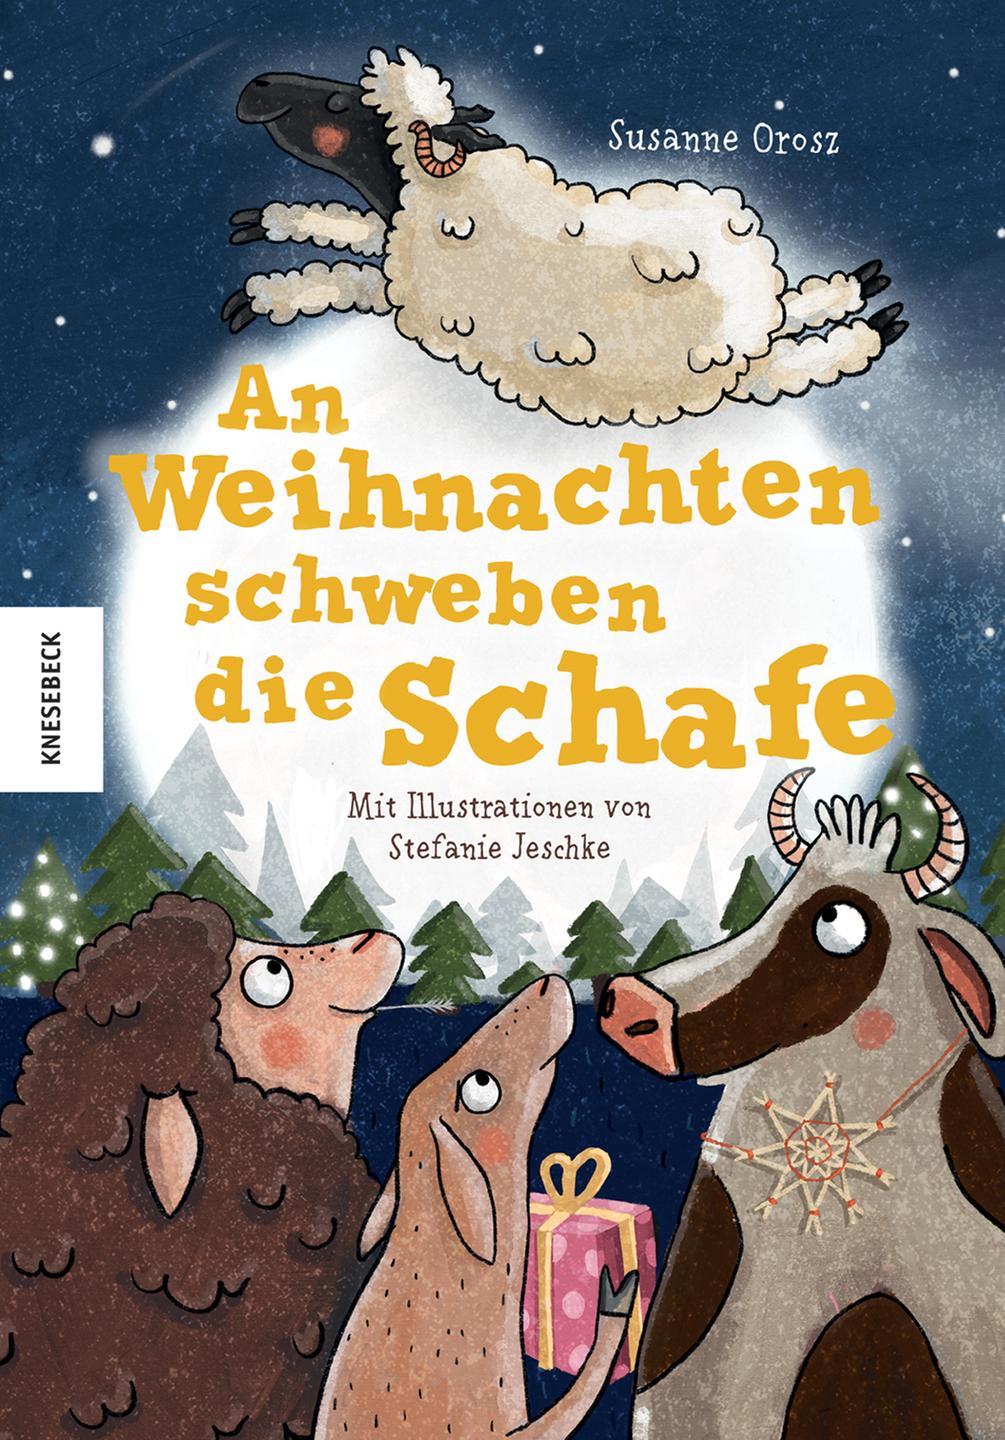 Cover des Buches "An Weihnachten schweben die Schafe" von Susanne Orosz.